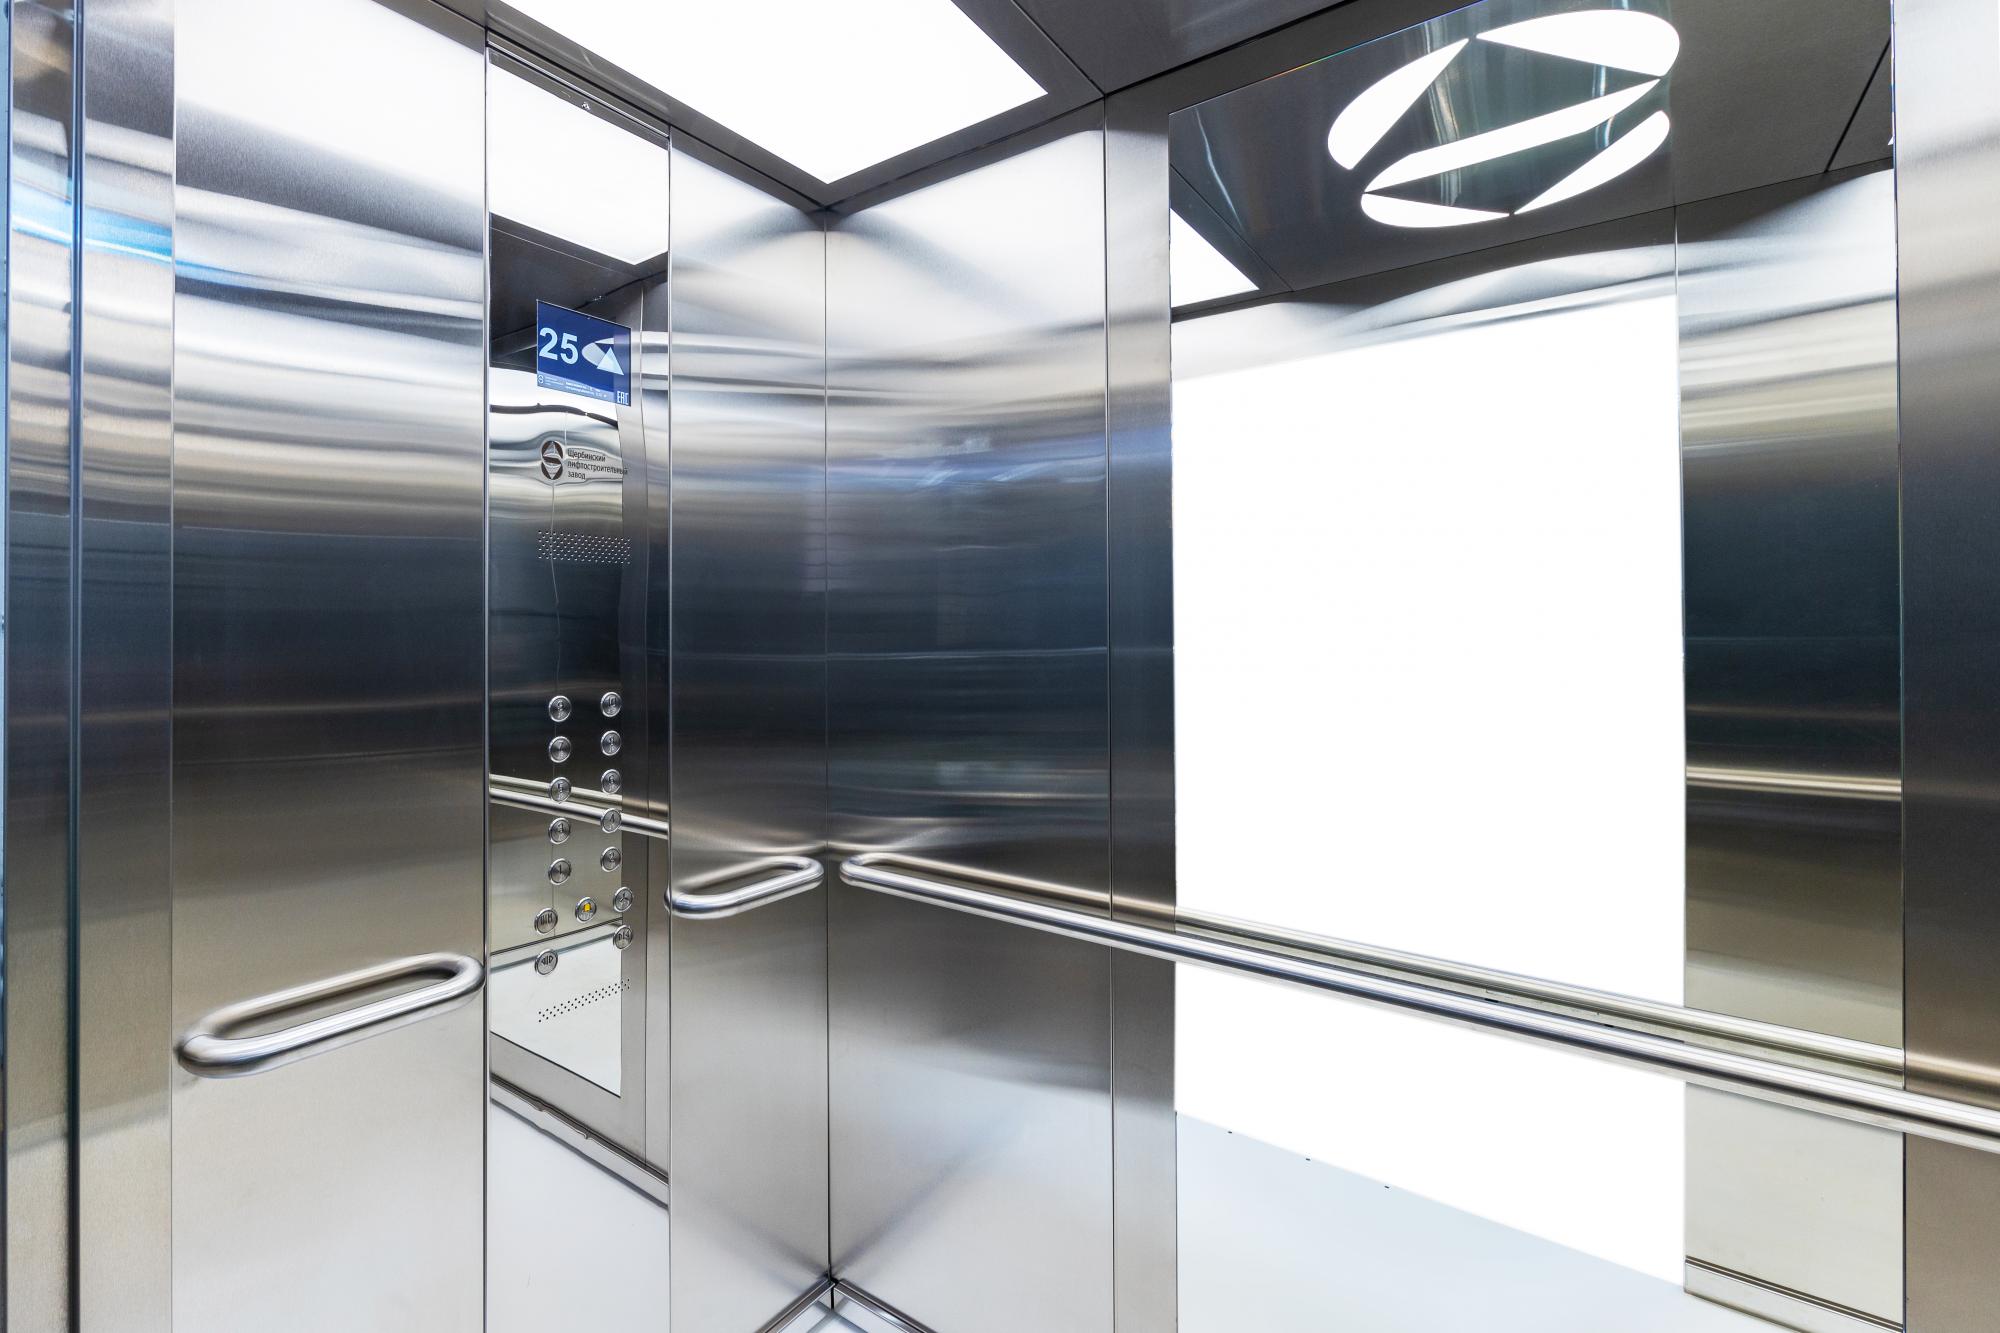 ЩЛЗ оборудовал лифты умной системой бесконтактного управления